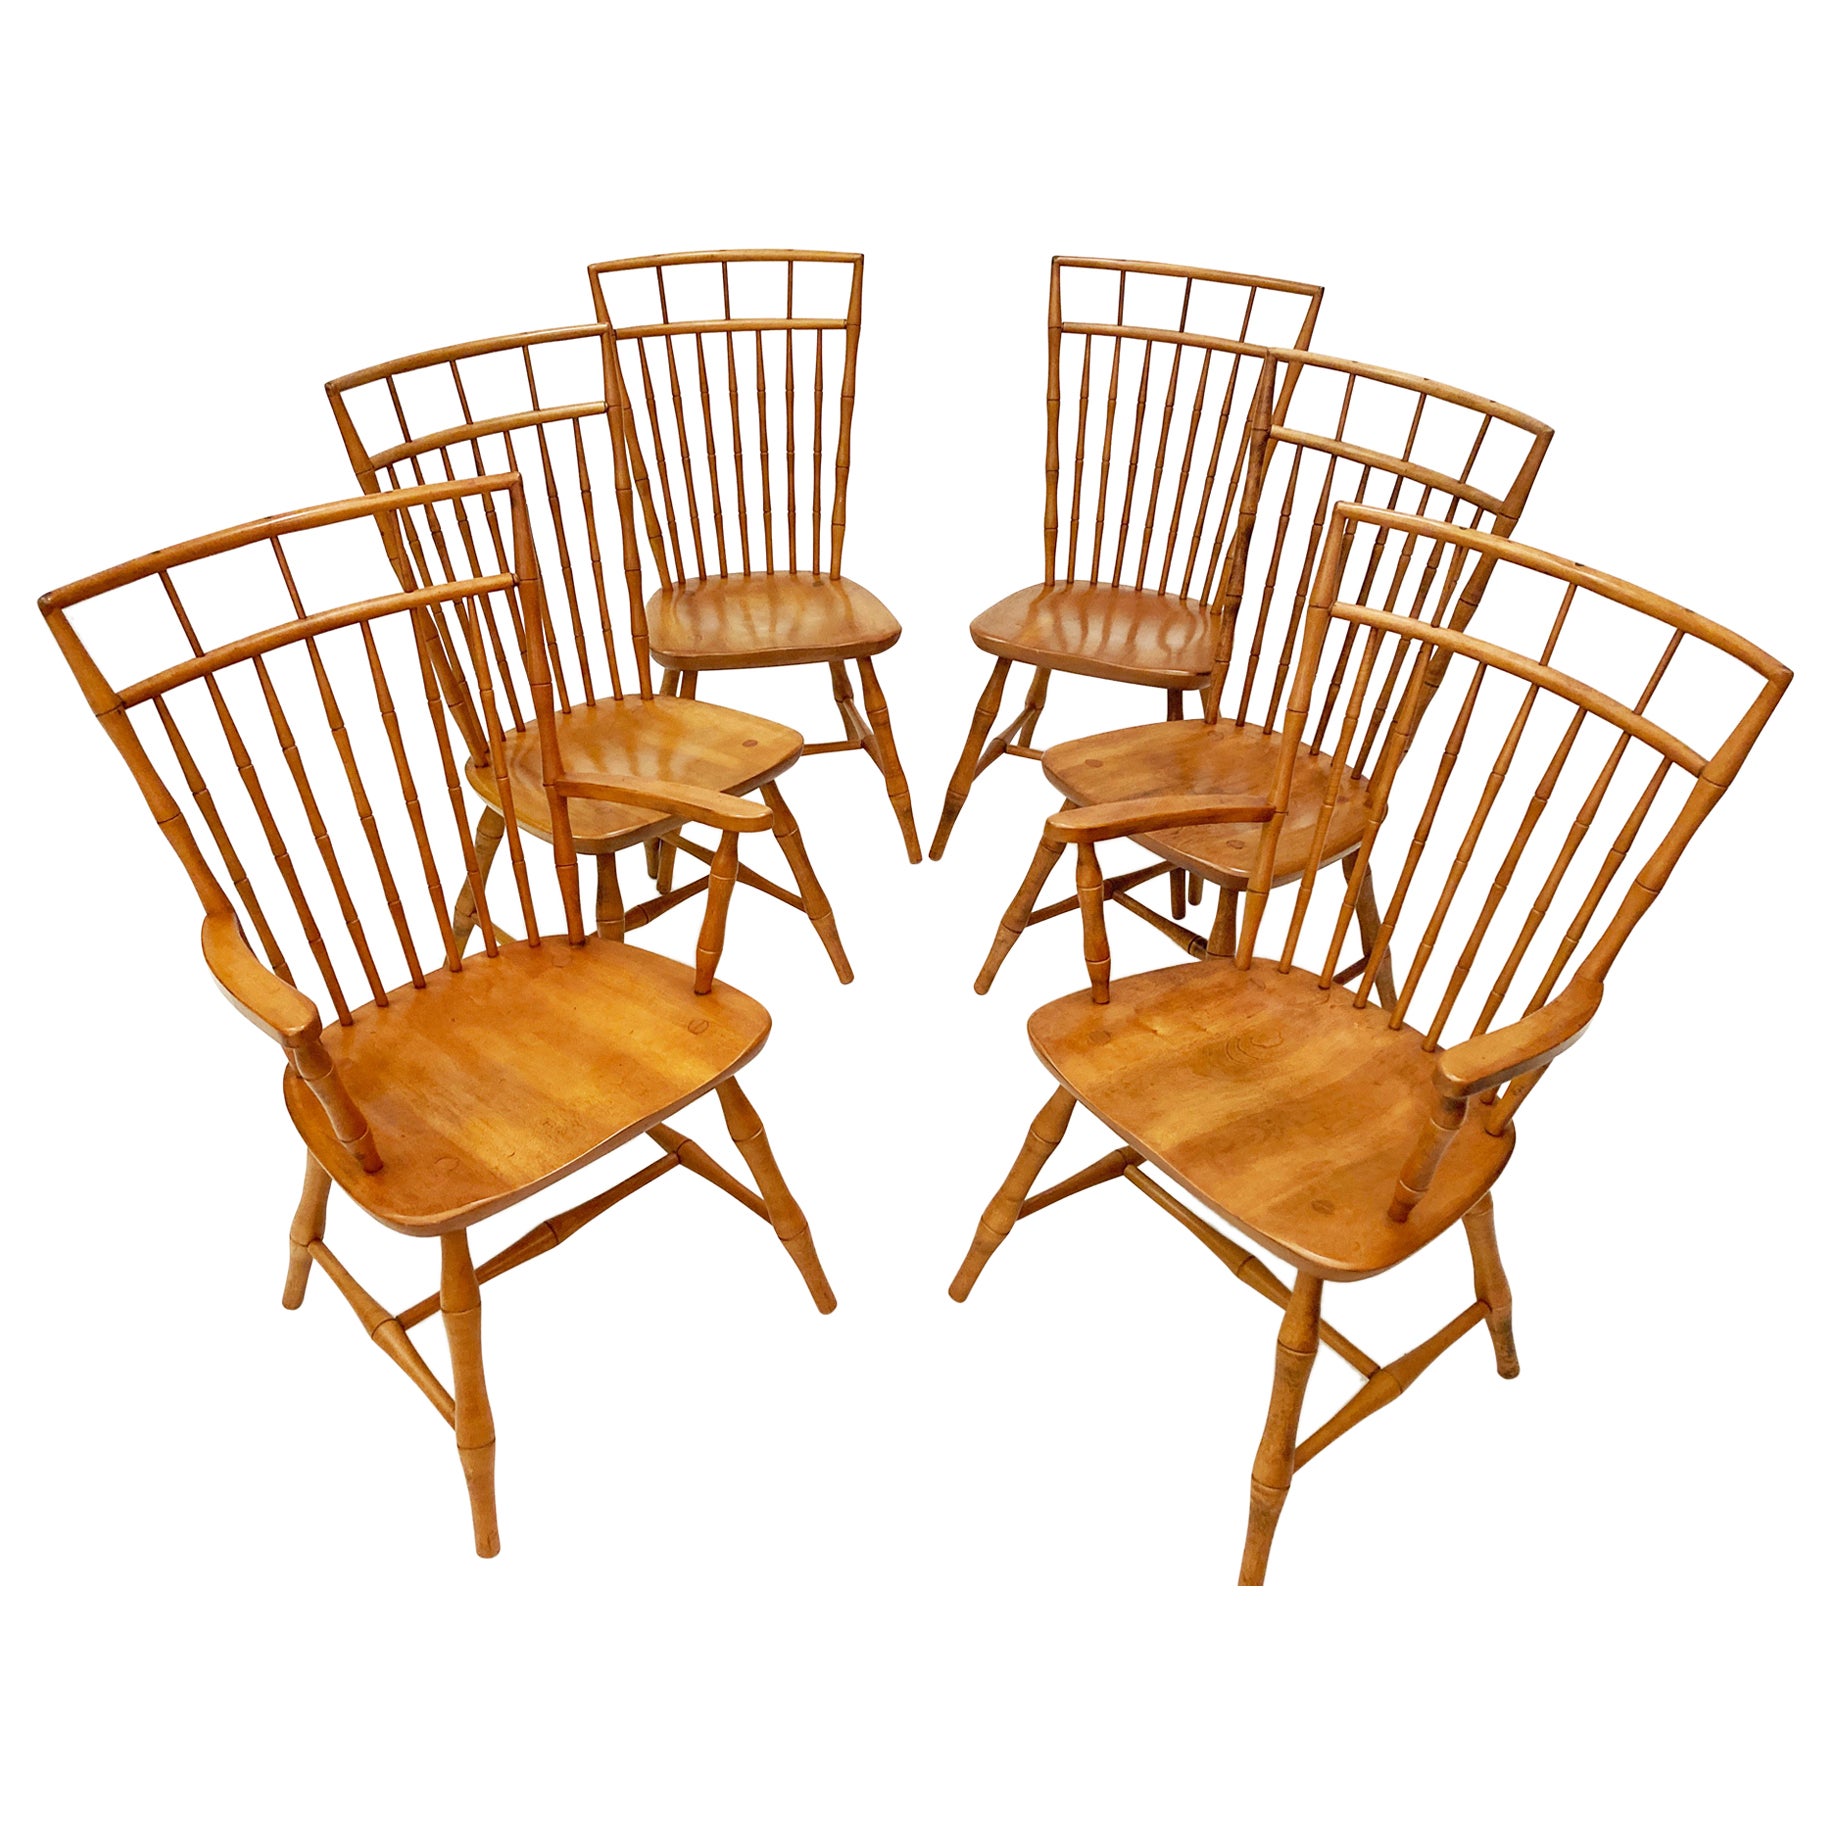 MCM Nichols & Stone Amerikanische Windsor-Esszimmerstühle aus Ahorn, Ahorn und Bambus mit Vogelkäfig, 6 Stühle